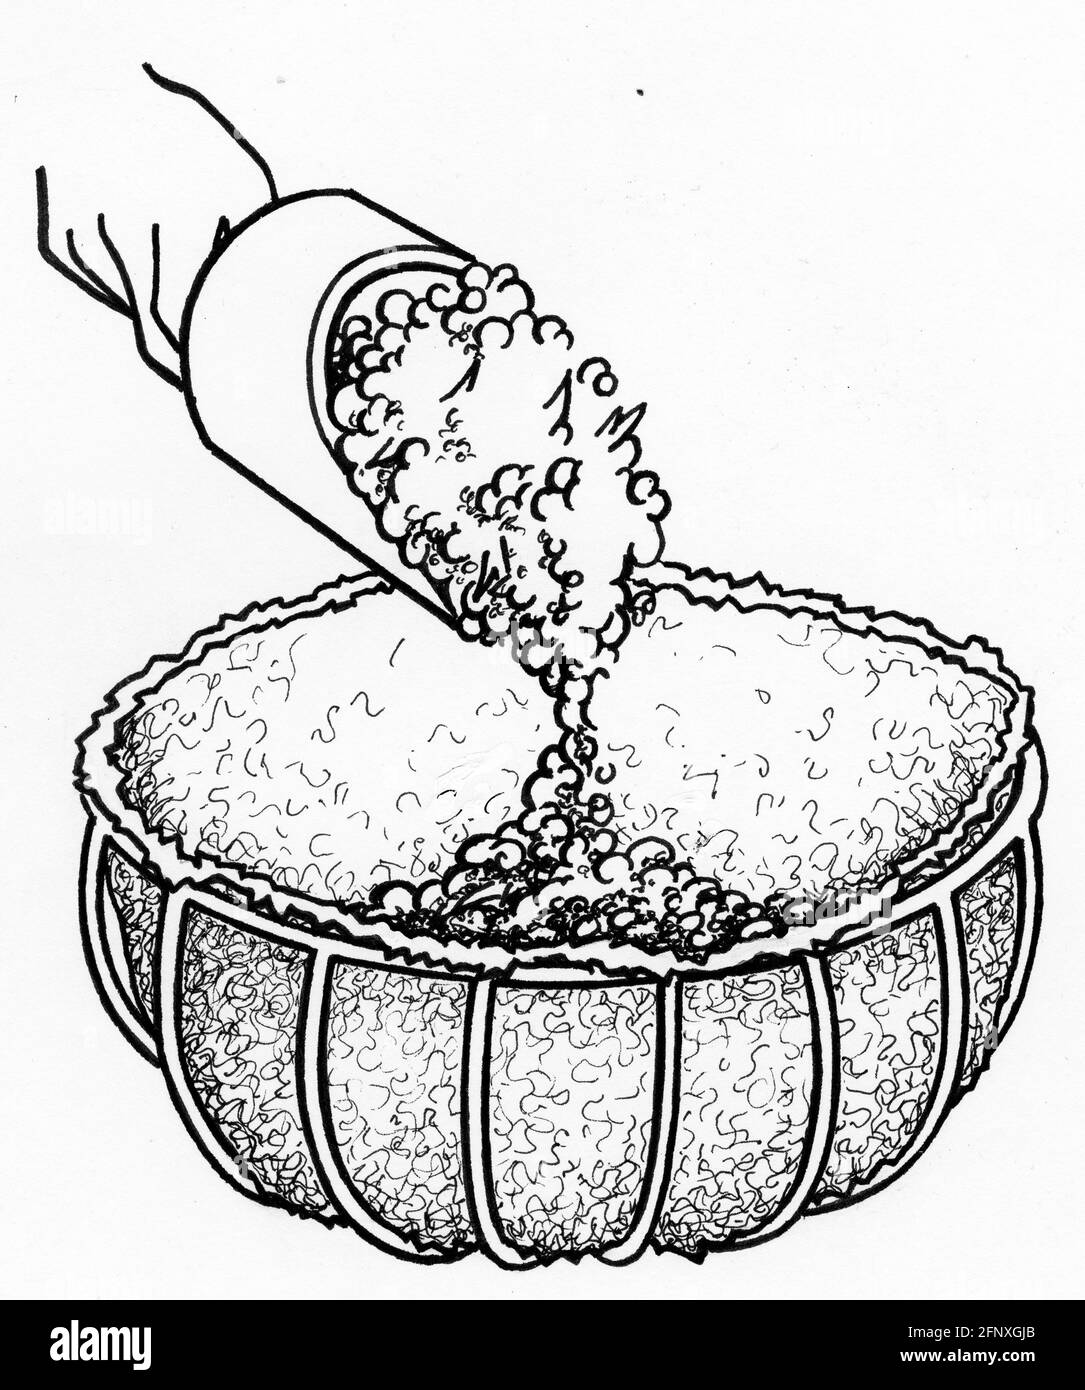 Dessin d'une personne remplissant un panier de semoir avec mélange d'enrobage Banque D'Images